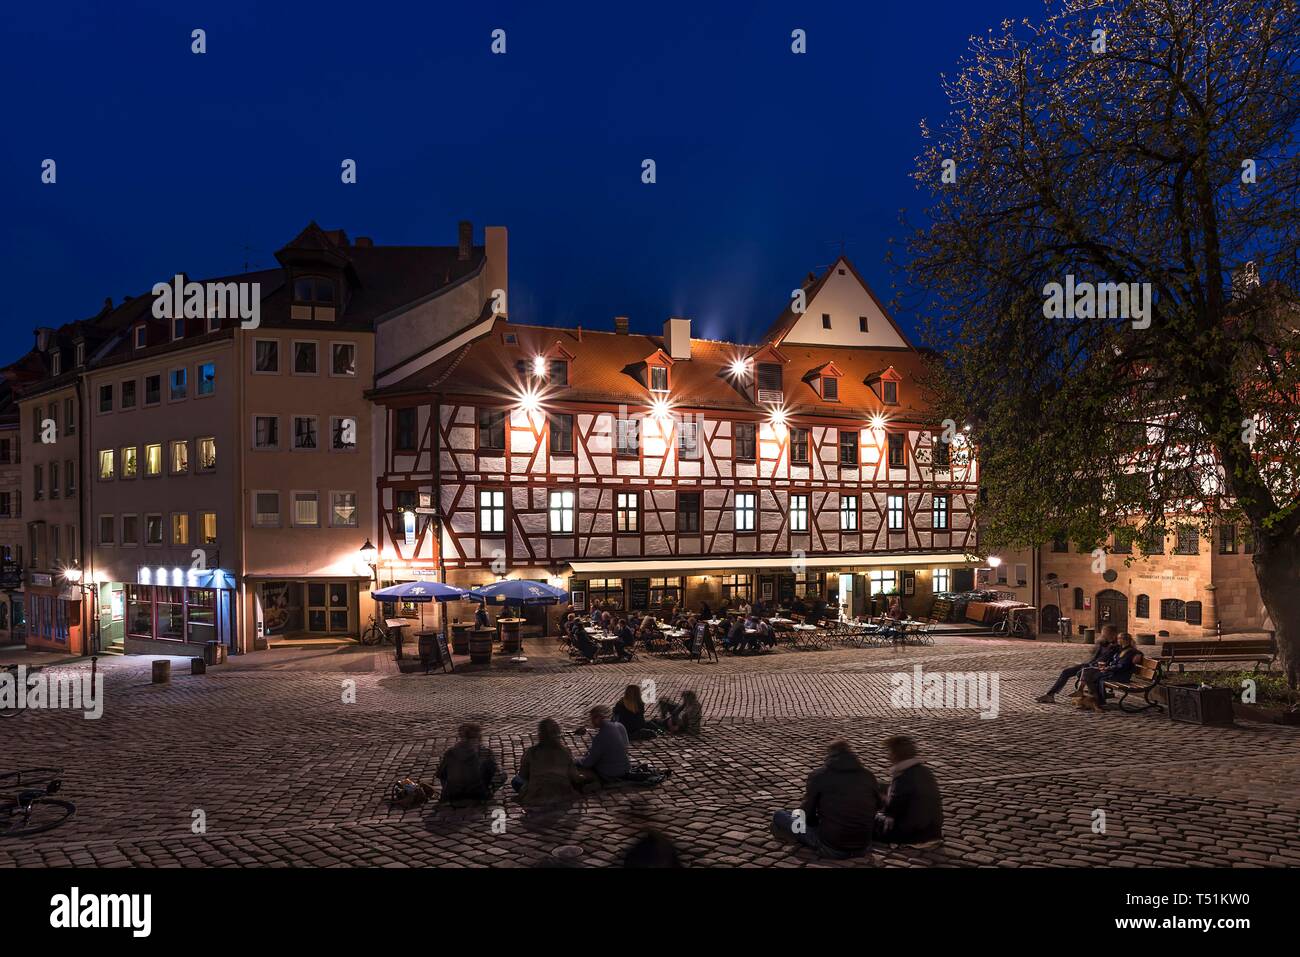 Junge Menschen auf dem Platz, historischen Restaurant in der Altstadt am Abend, Tiergartnertorplatz, Nürnberg, Mittelfranken, Bayern, Deutschland Stockfoto